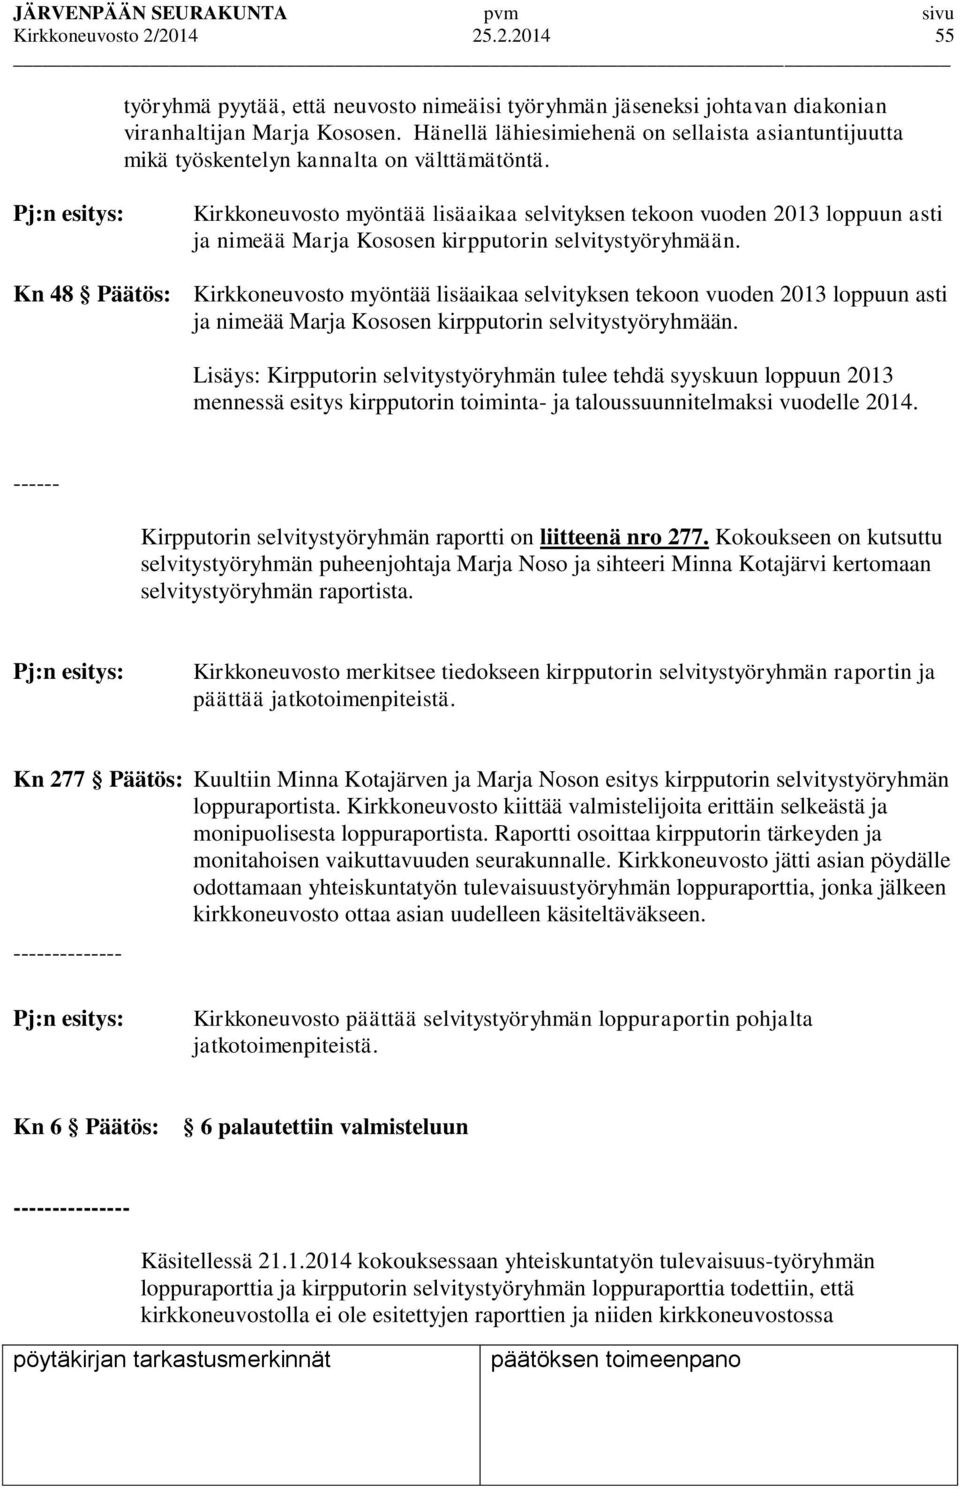 Pj:n esitys: Kirkkoneuvosto myöntää lisäaikaa selvityksen tekoon vuoden 2013 loppuun asti ja nimeää Marja Kososen kirpputorin selvitystyöryhmään.